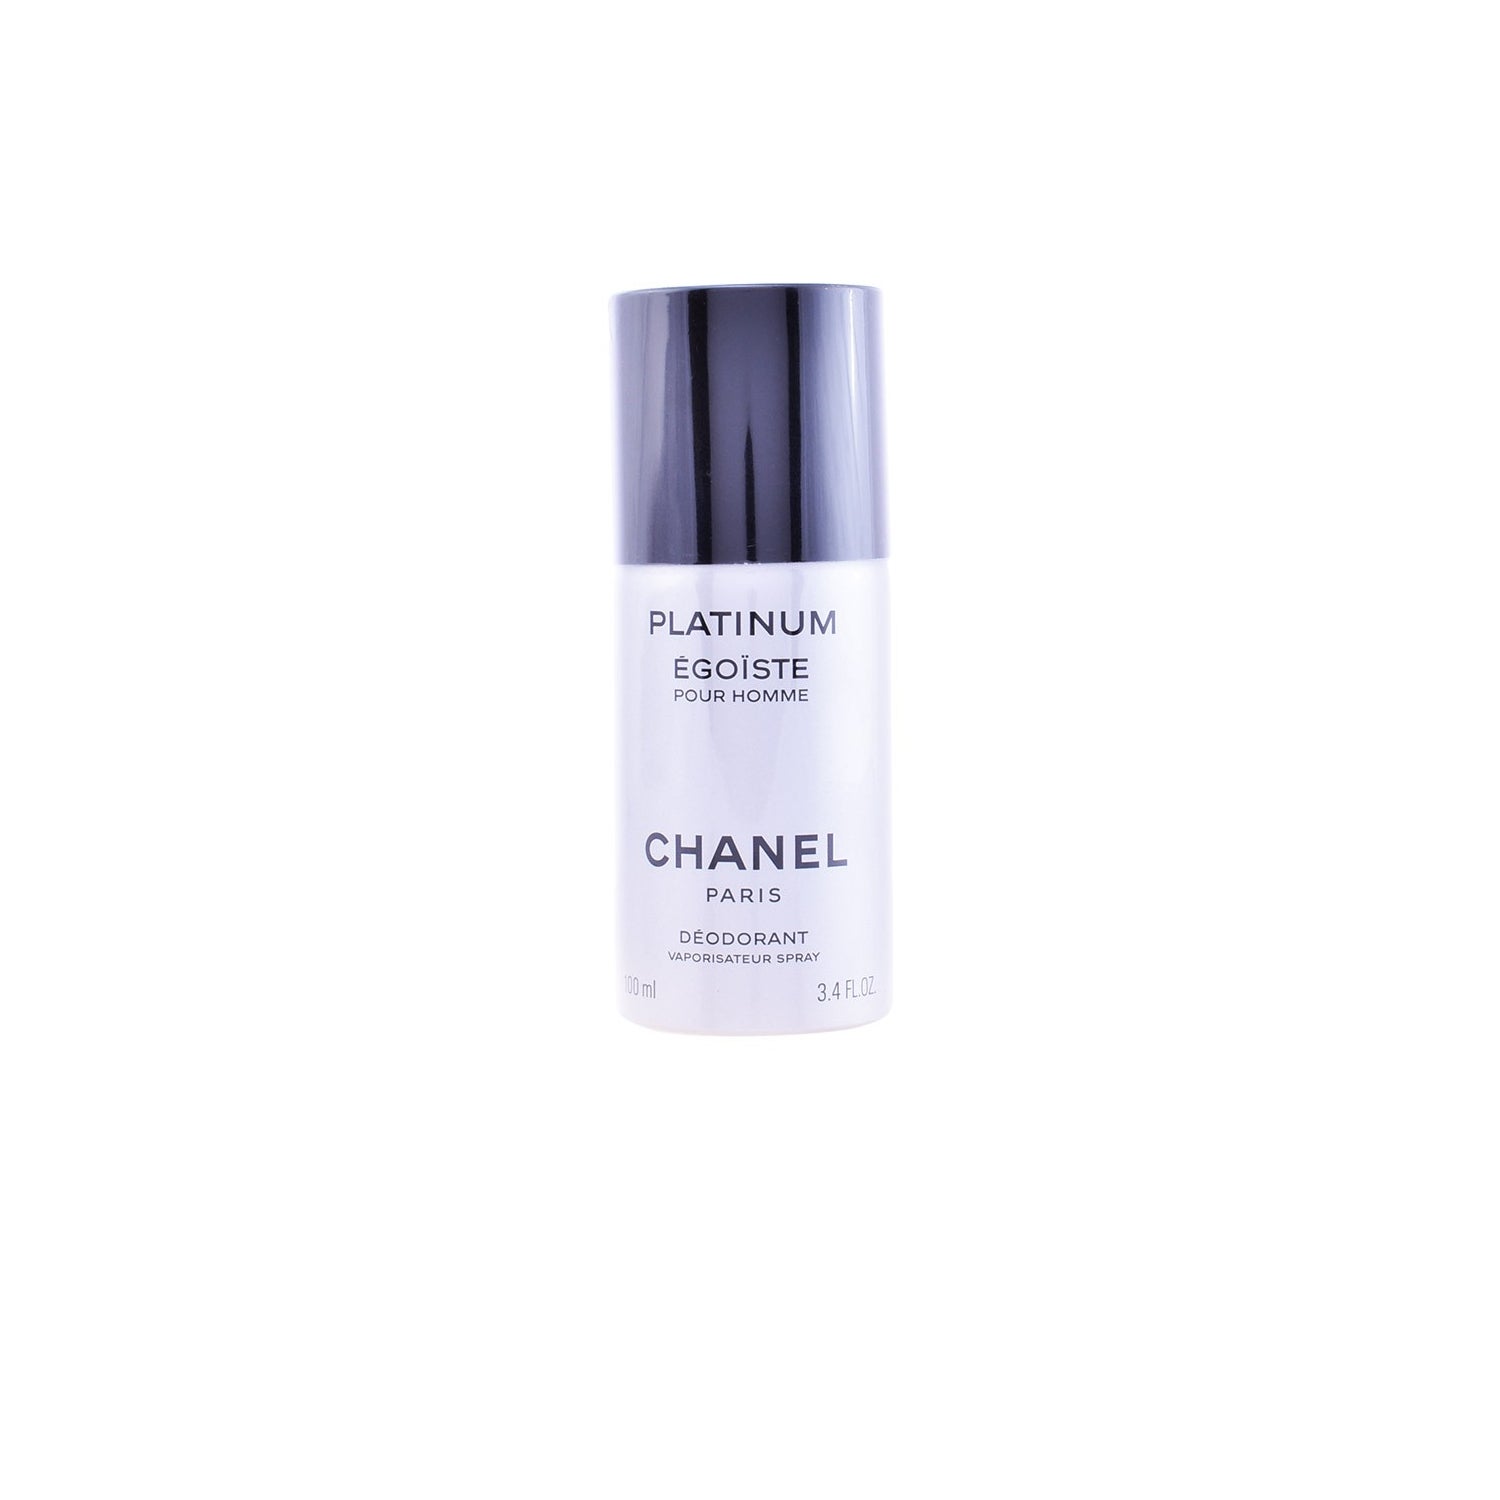 Chanel Gabrielle Deodorant 100ml (Deo Spray)